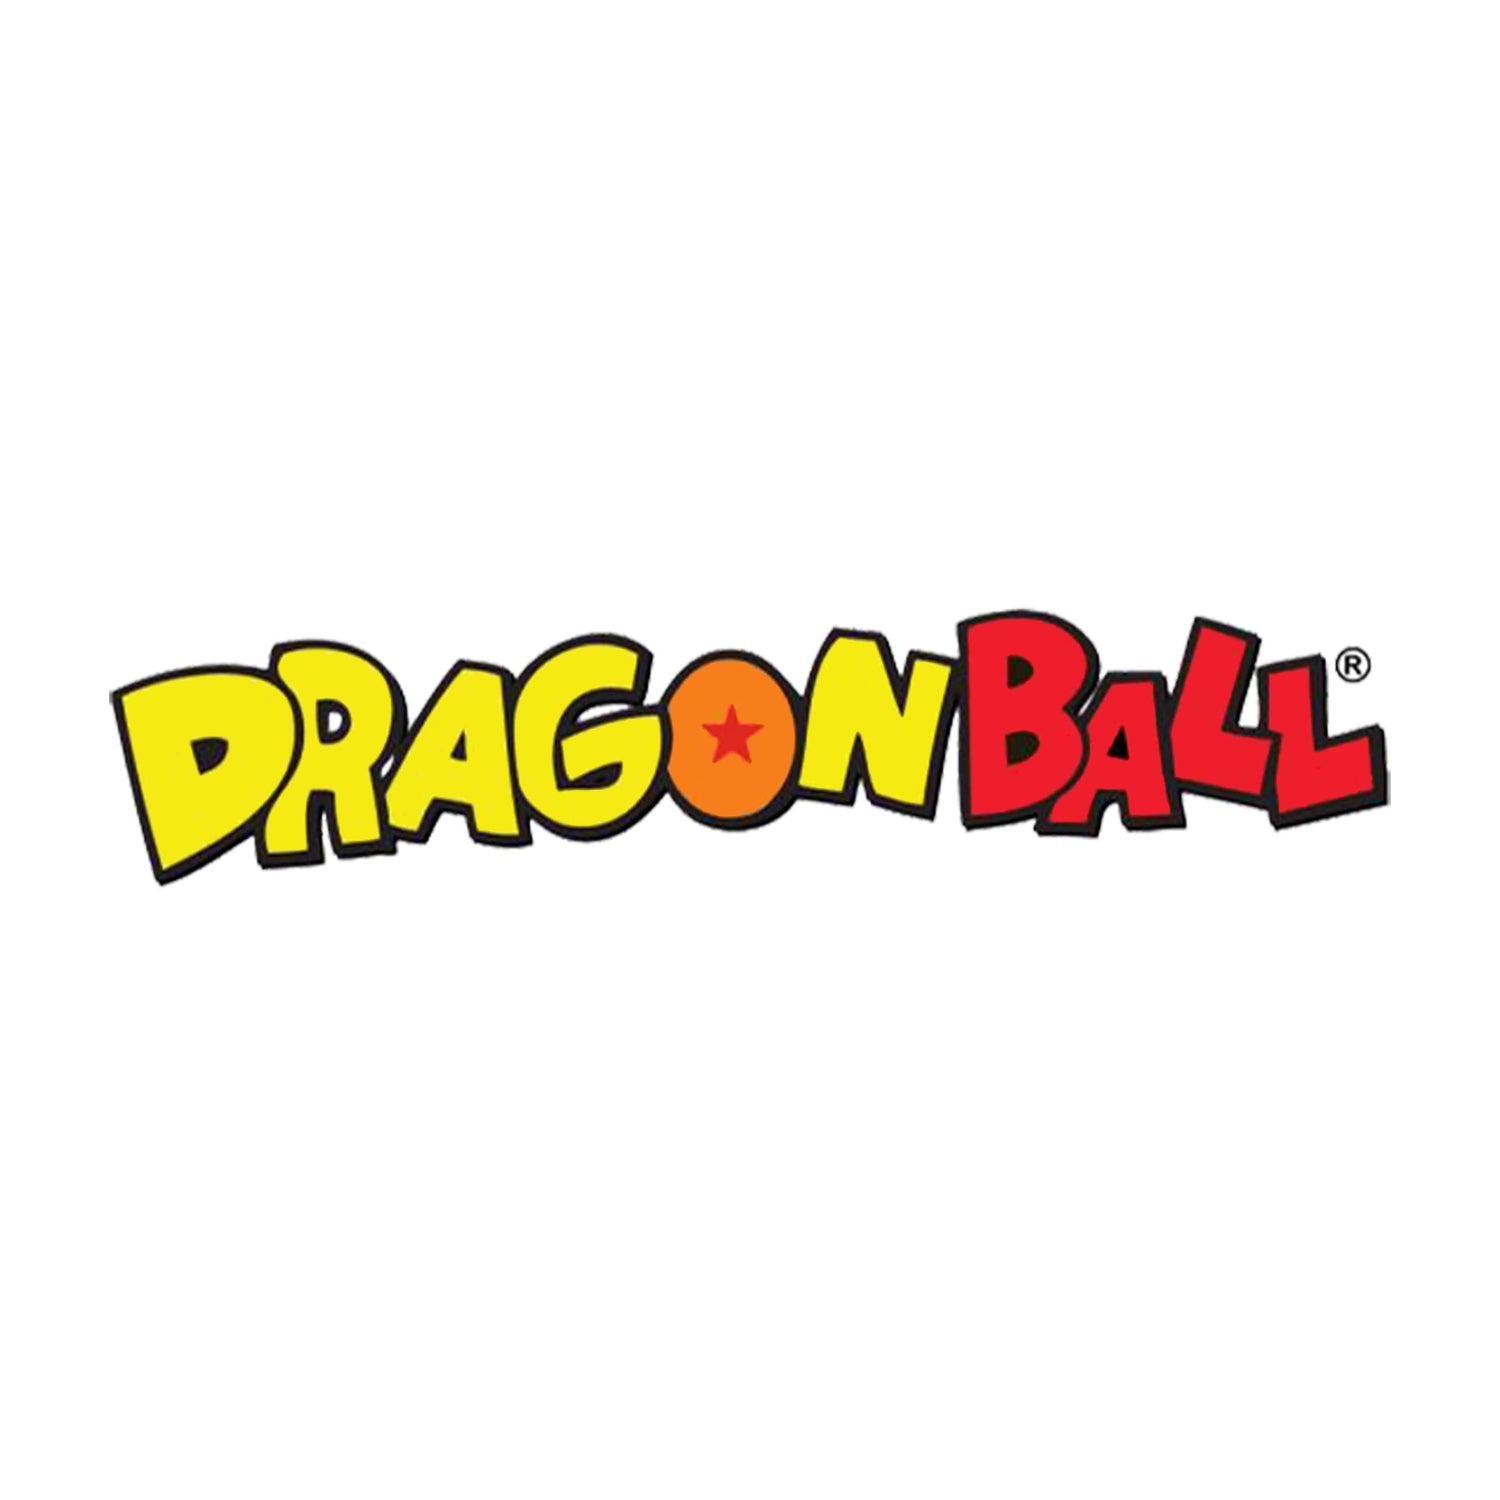 DRAGON BALL